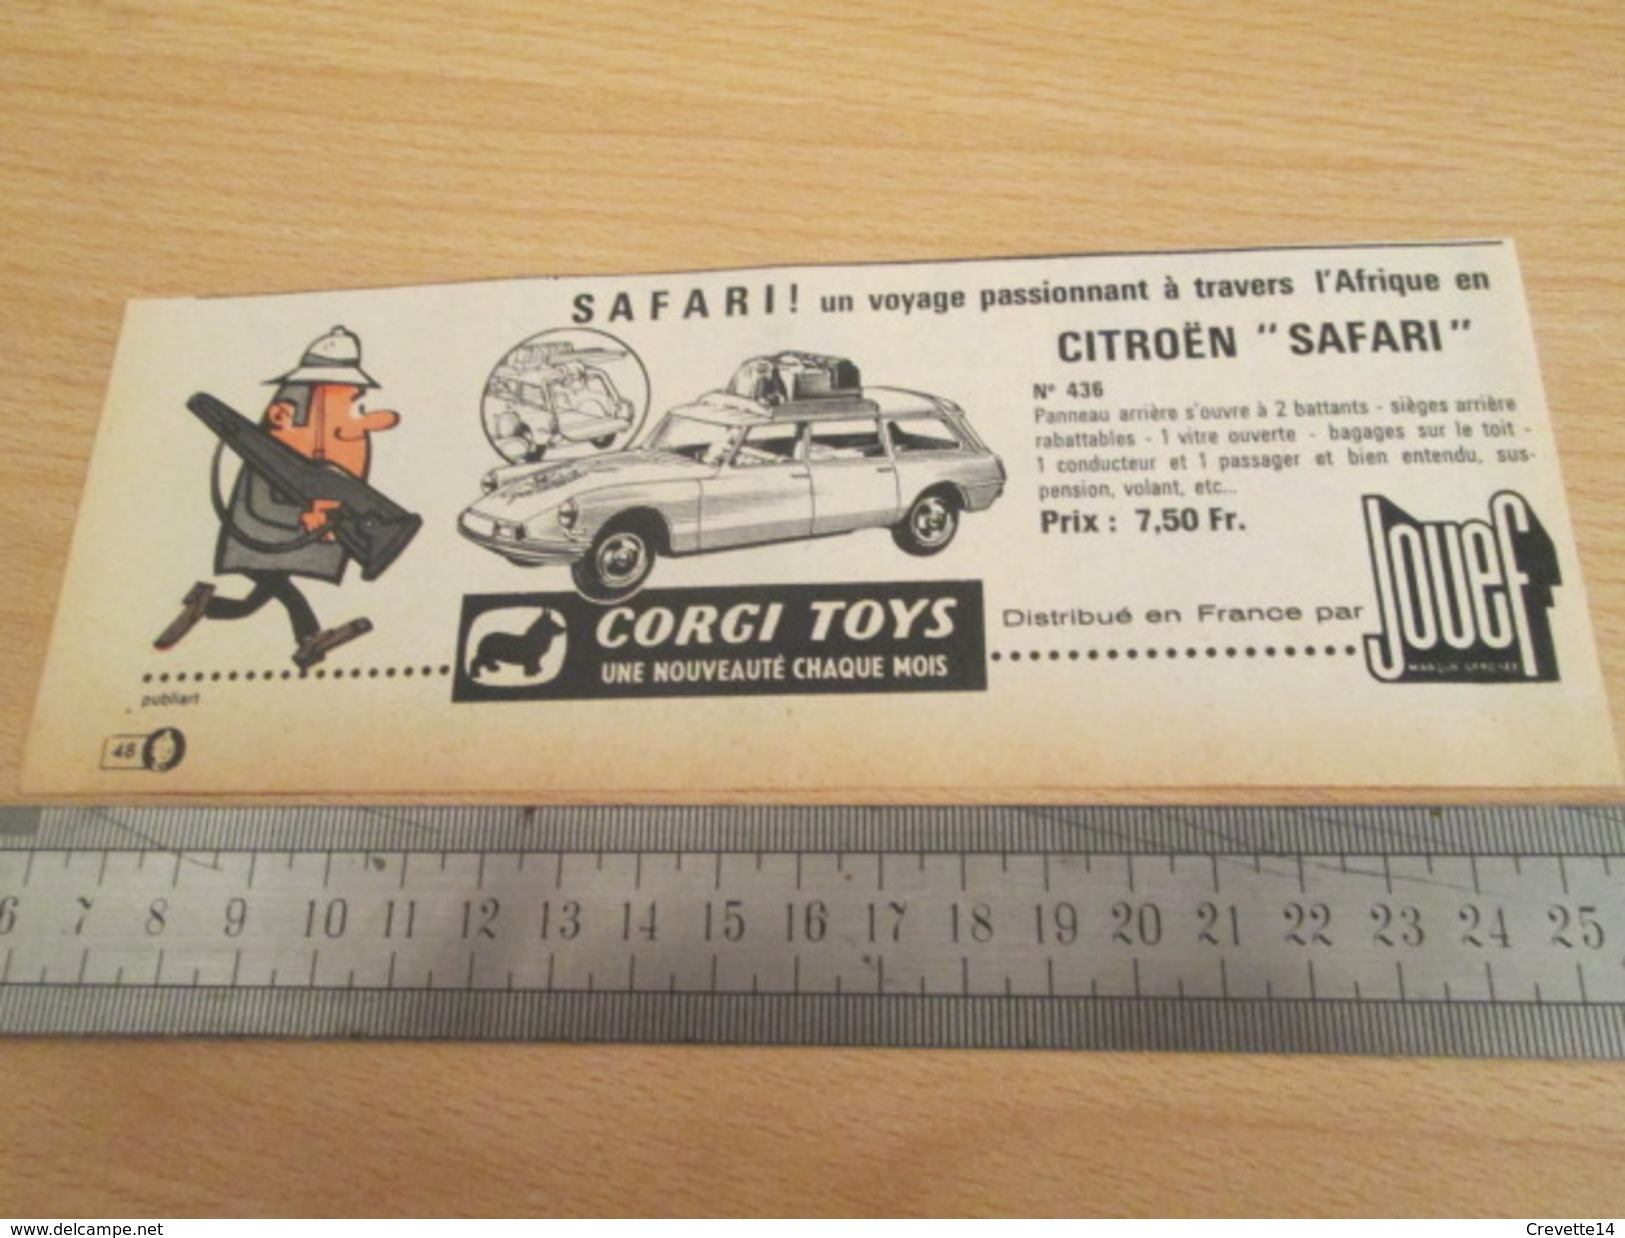 Page De Revue Des Années 60/70 : PUBLICITE  CORGY TOYS DS CITROEN SAFARI   Format  VOIR REGLE SUR PHOTO - Corgi Toys